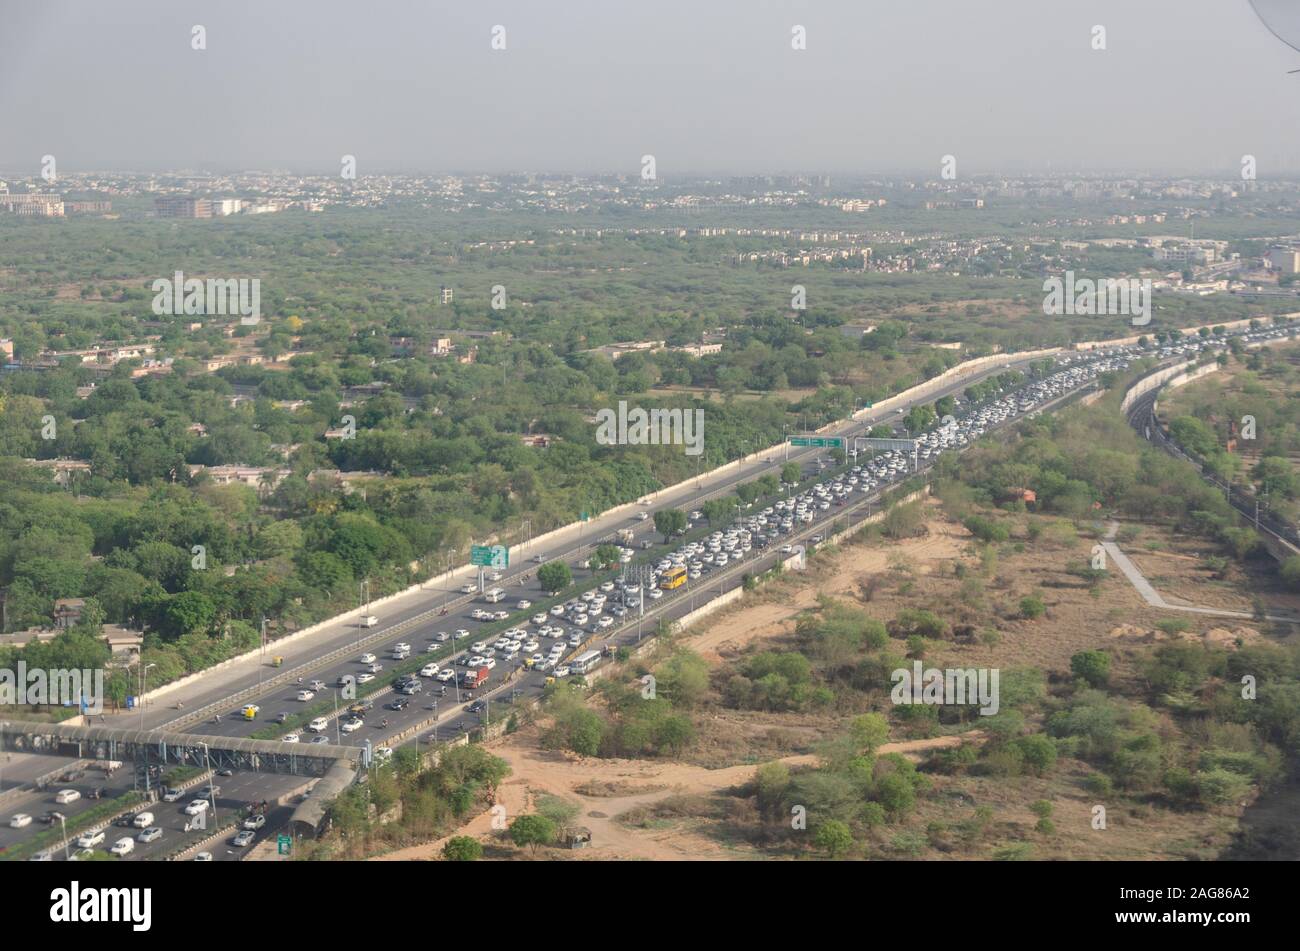 Vista de la congestión del tráfico de Delhi desde la ventana de vuelo a través de bruma contaminada en el aire. Foto de stock